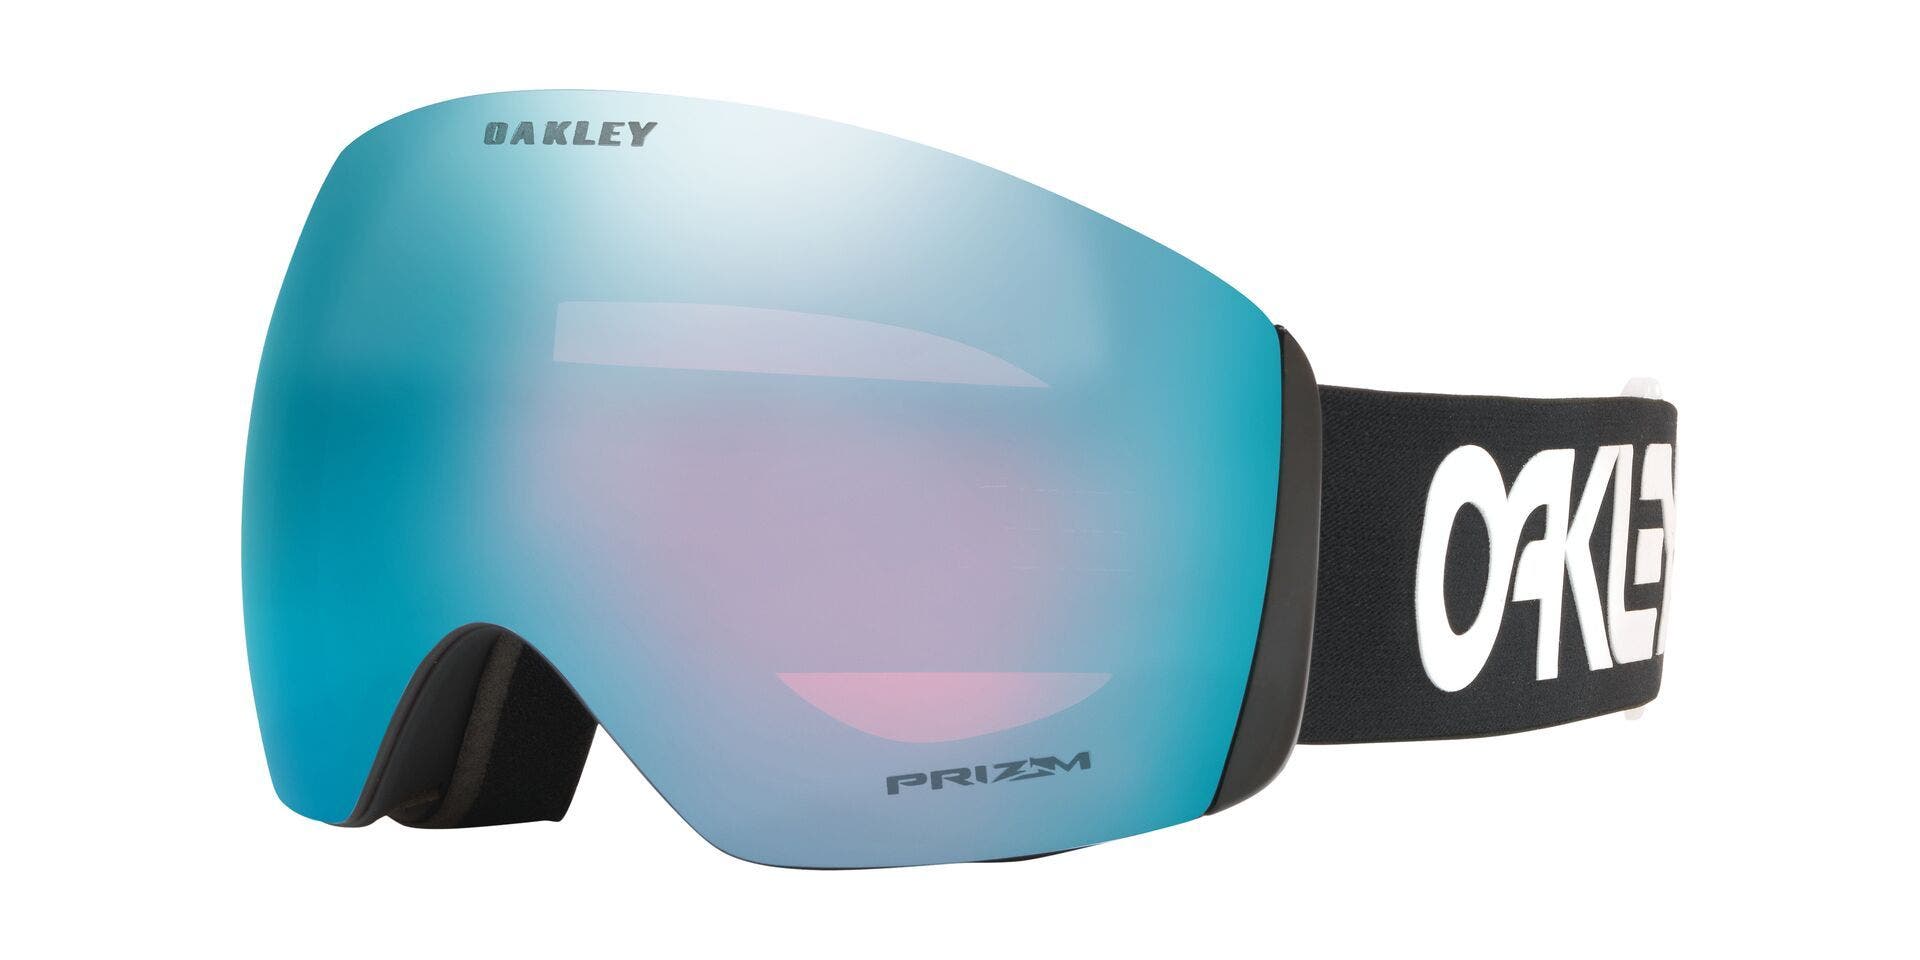 Oakley Goggle Size Guide 2021 | SportRx | SportRx